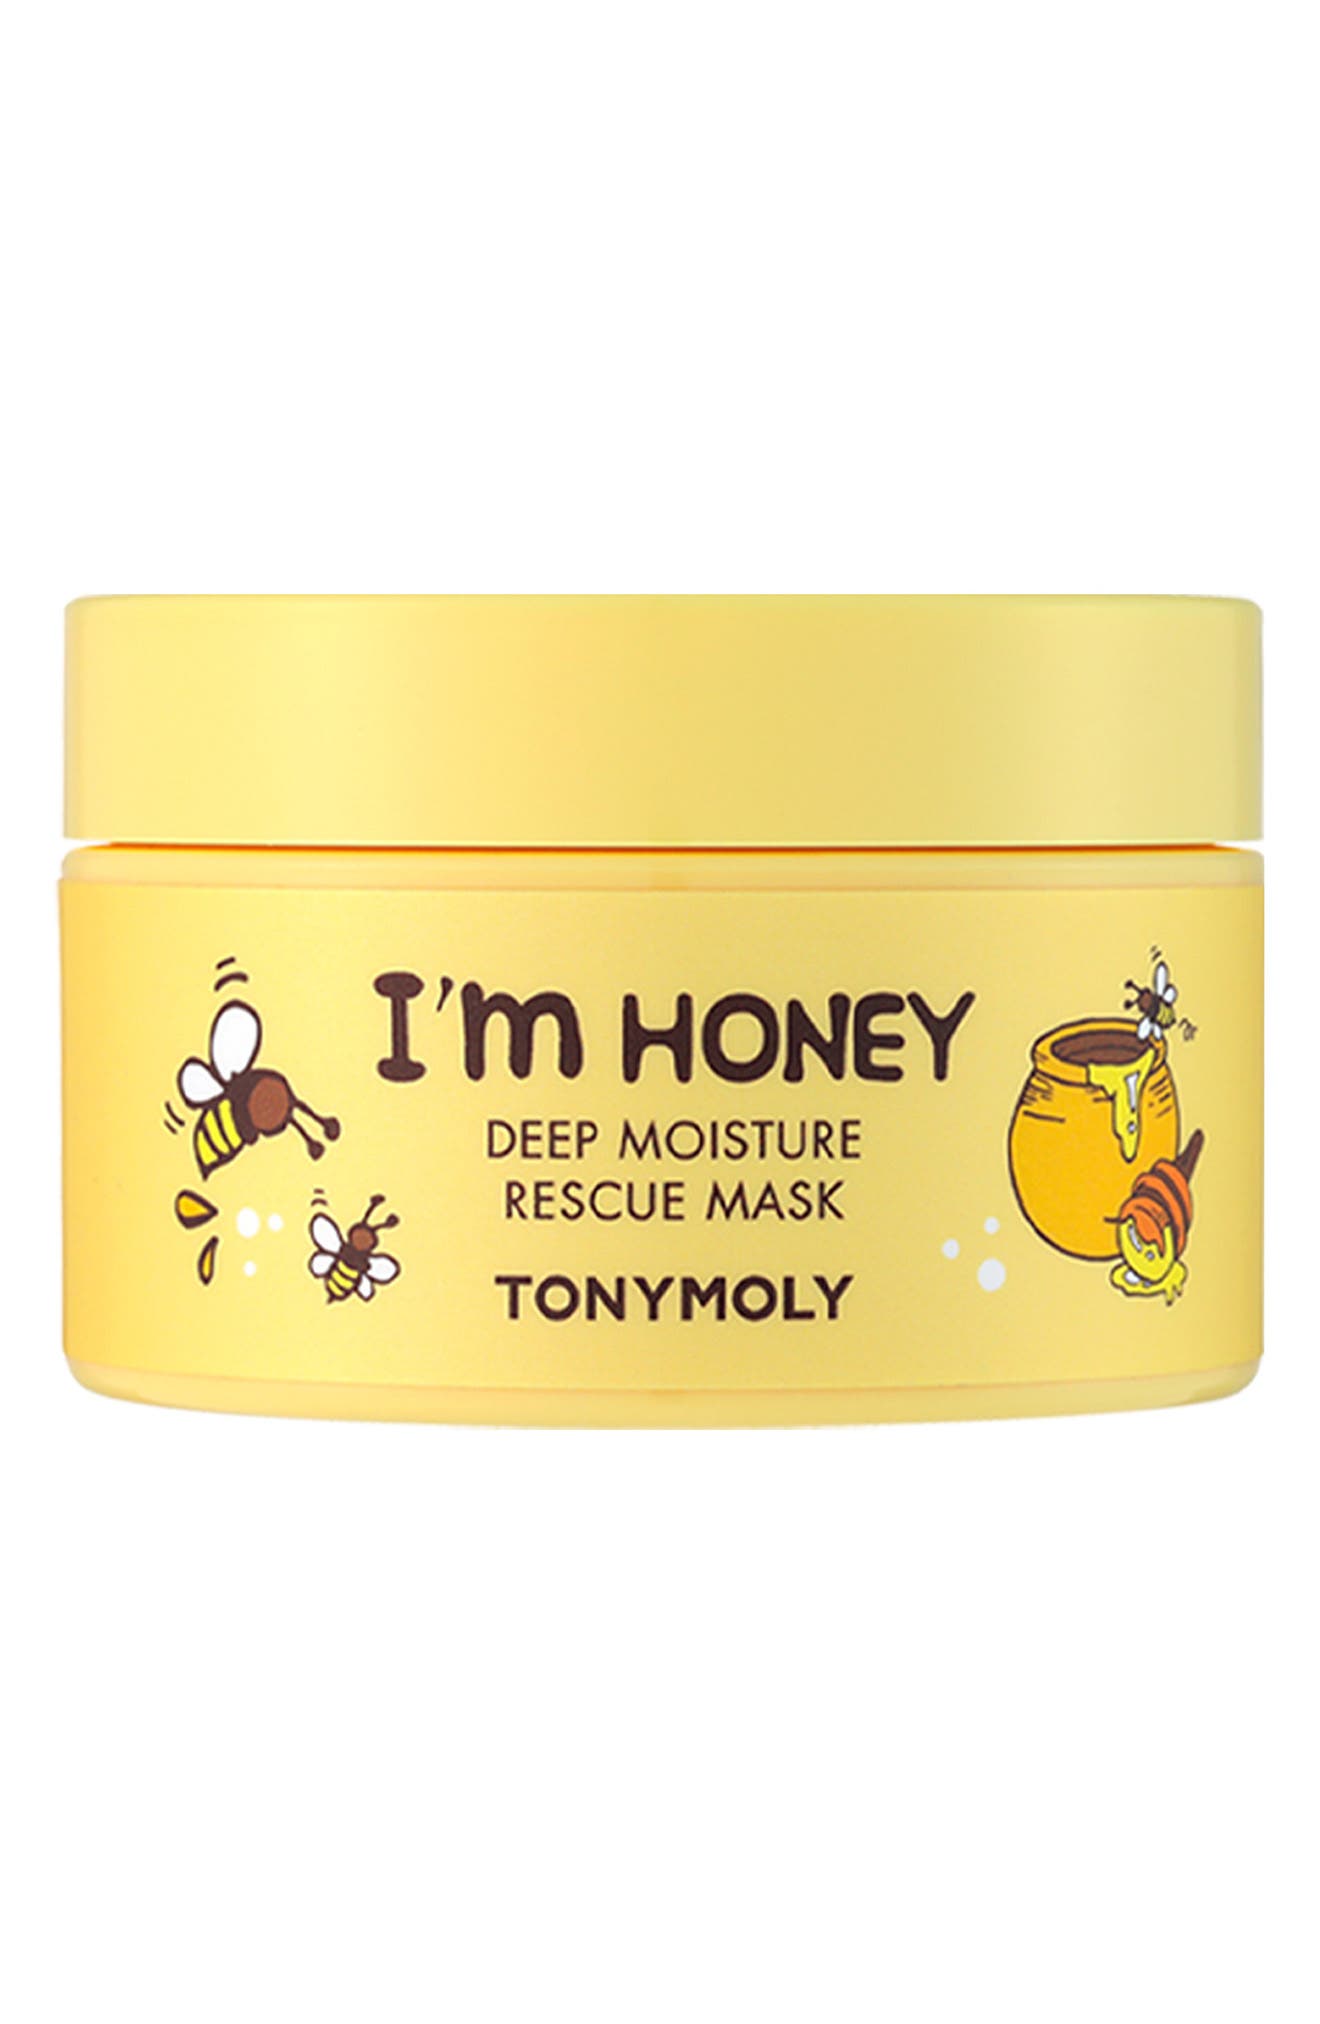 I'm Honey Глубоко увлажняющая спасательная маска TONYMOLY